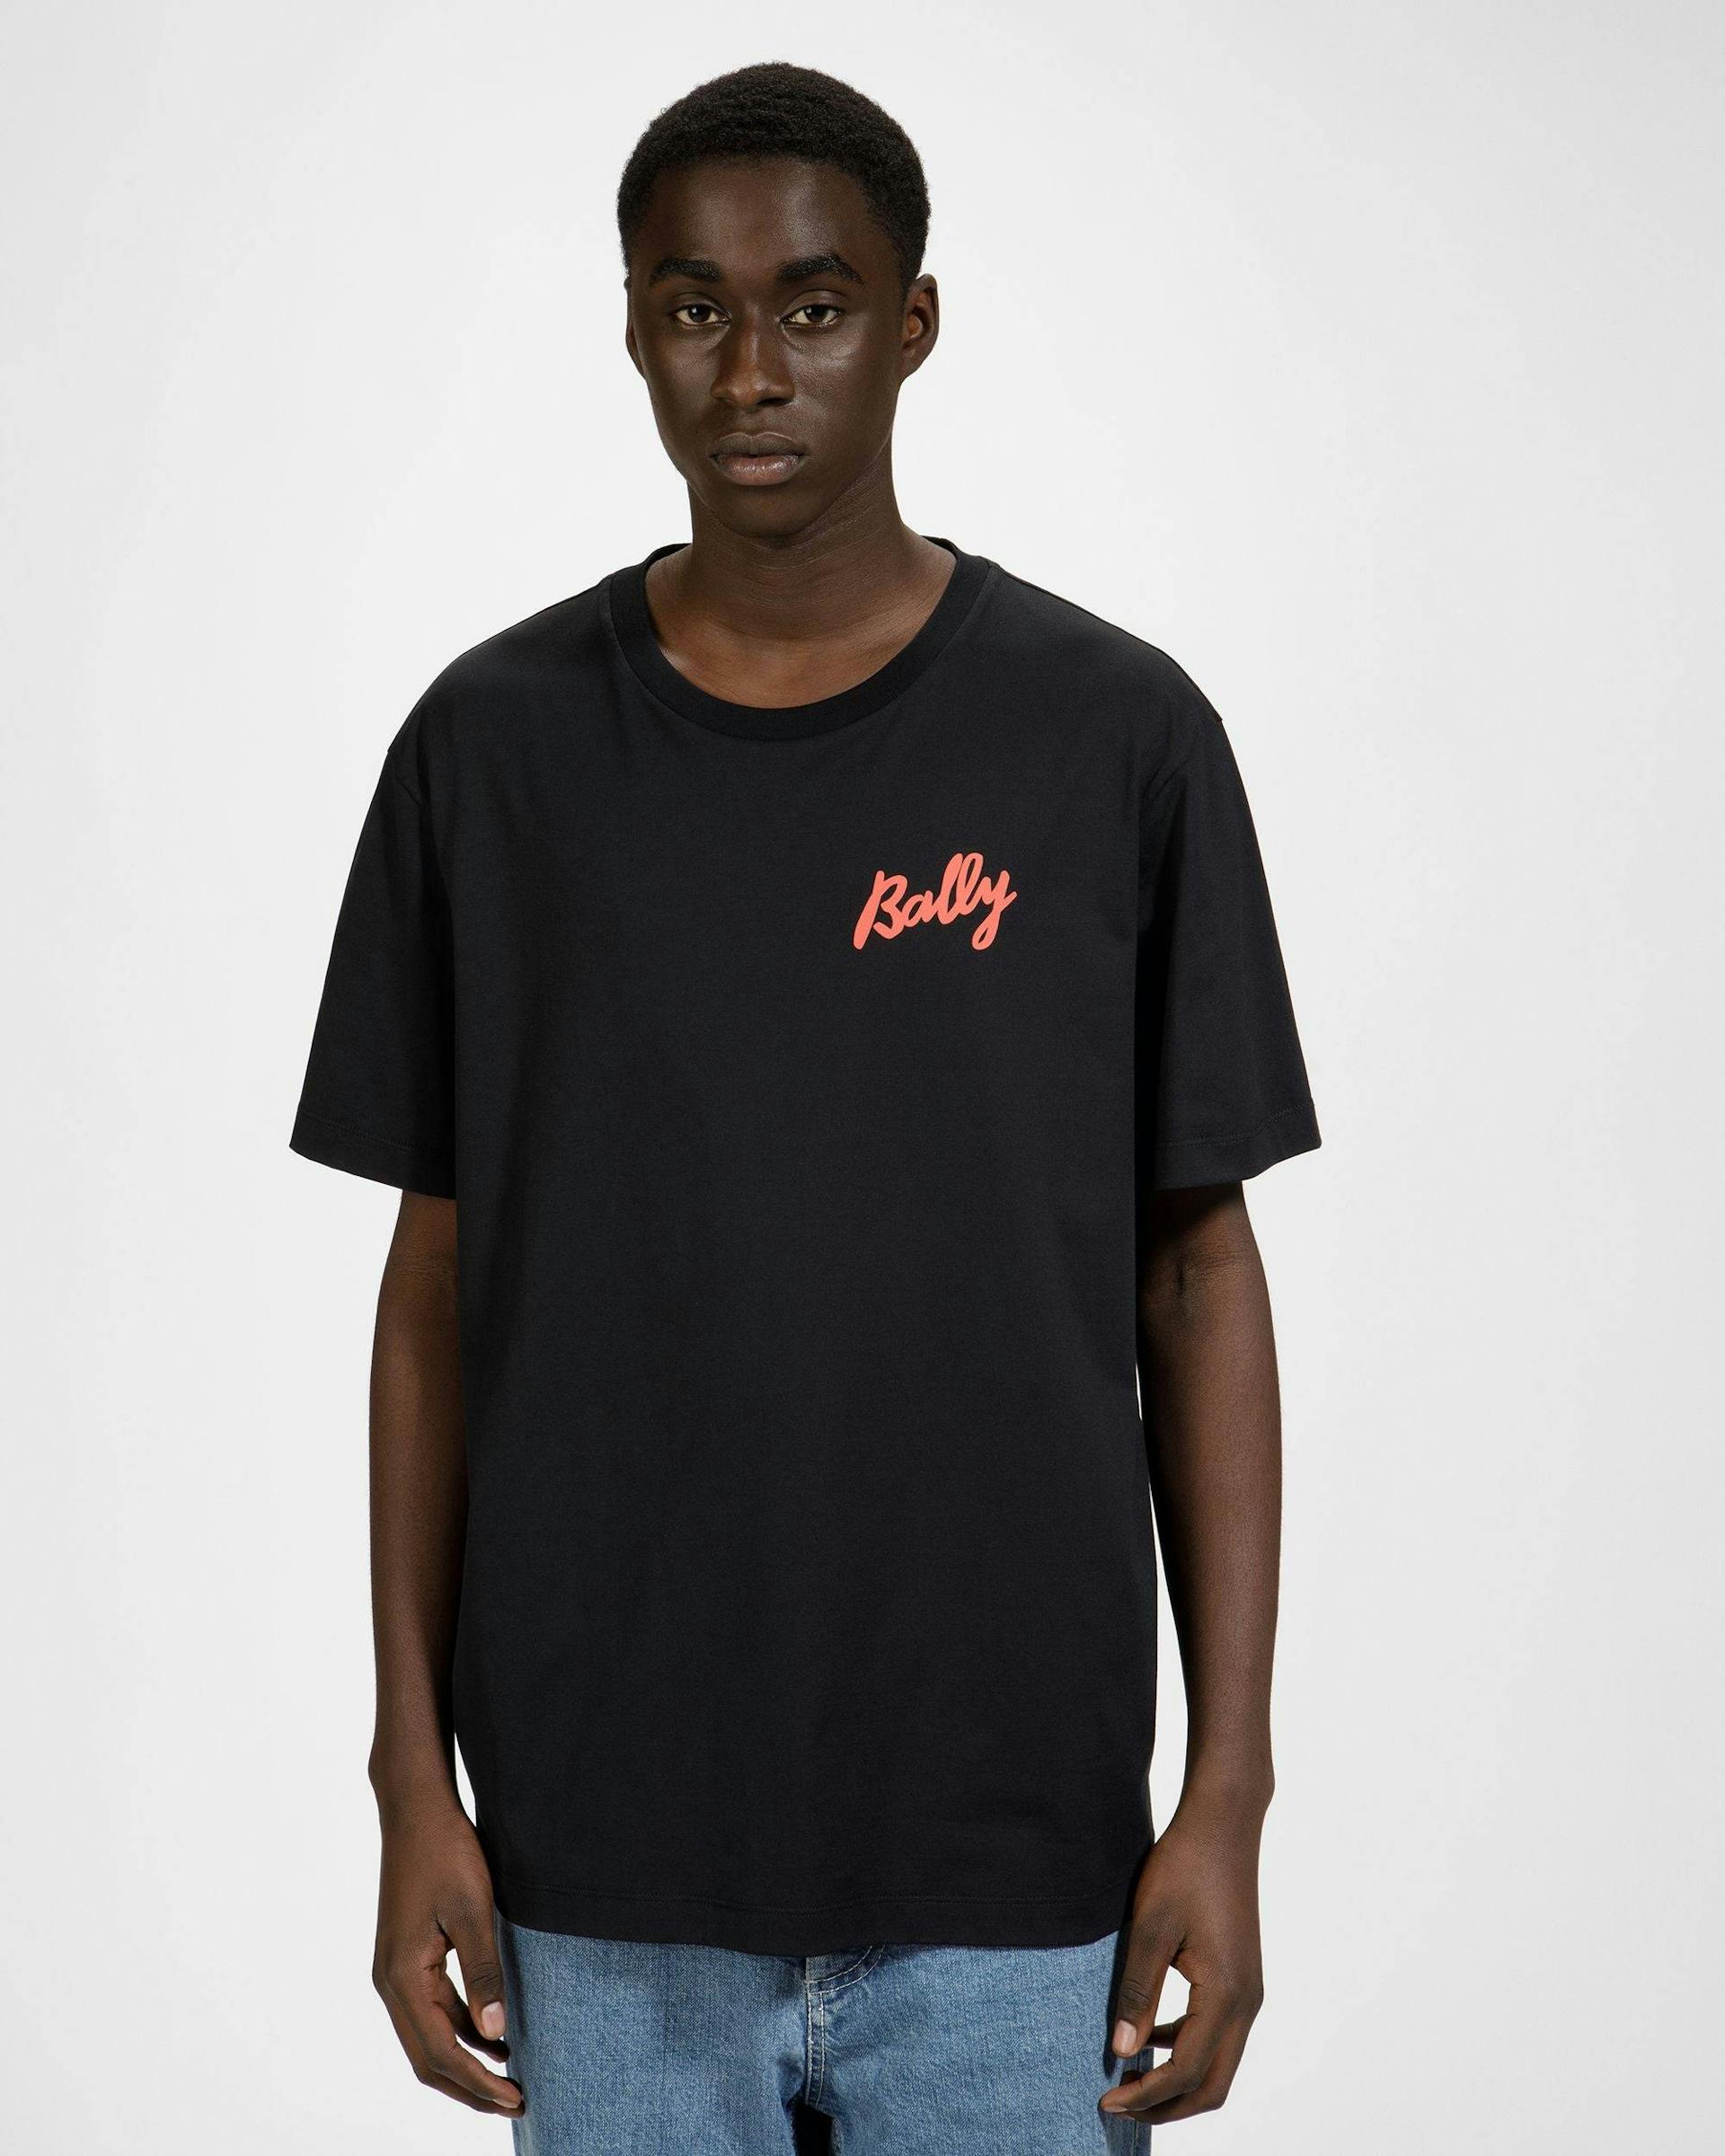 T-Shirt En Coton Noir Et Orange - Homme - Bally - 03